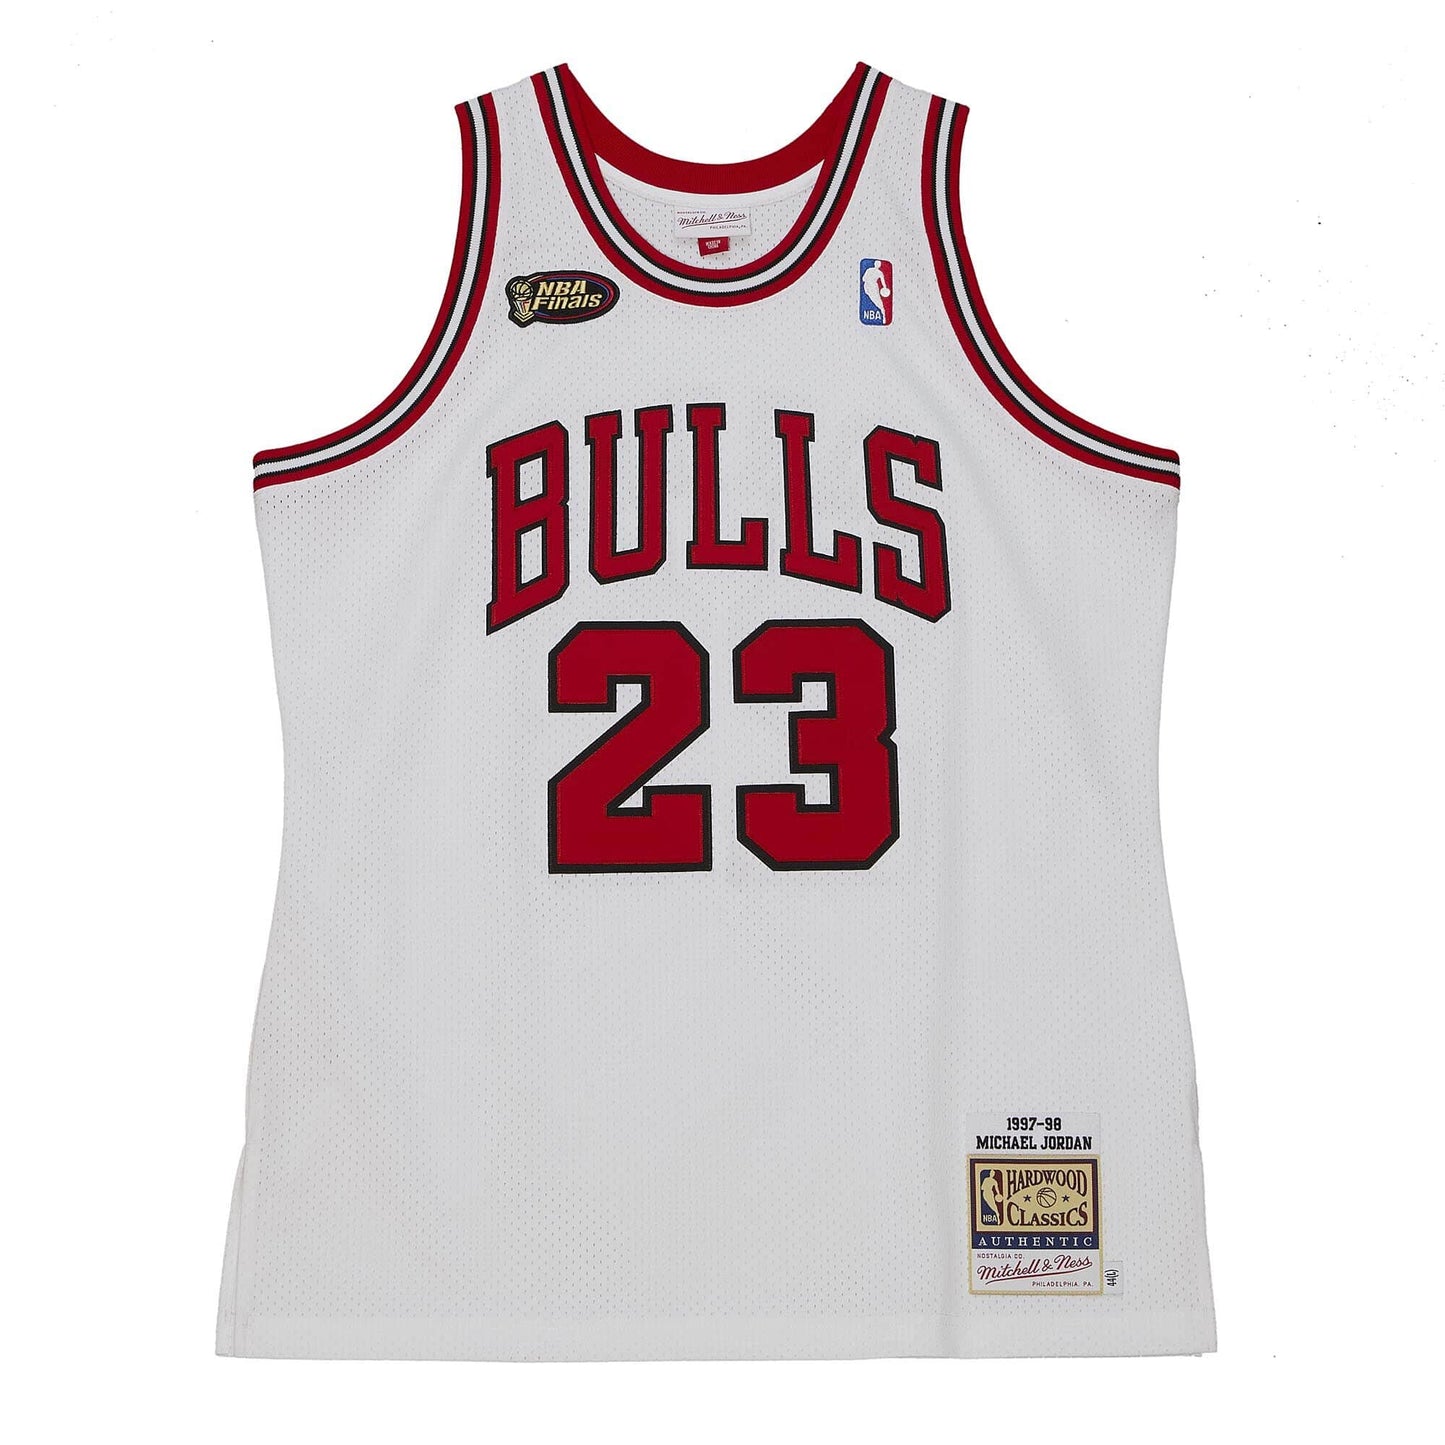 Authentic Michael Jordans Chicago Bulls Finals 1997-98 Jersey